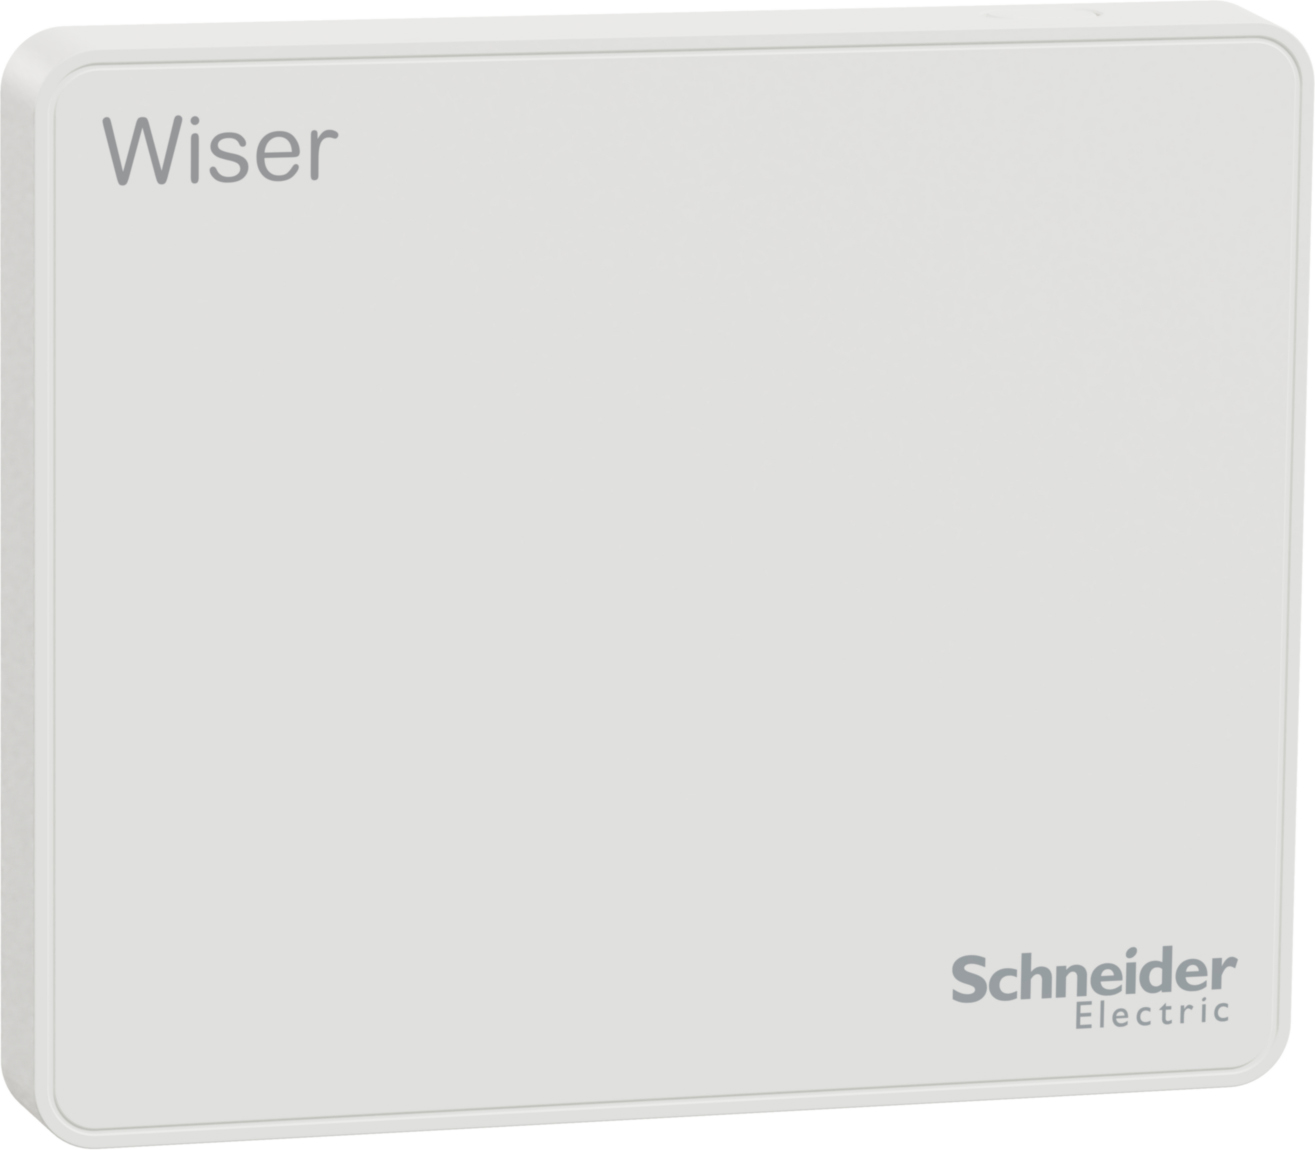 Schneider Electric Wiser Hub (2. Generation) CCT501801